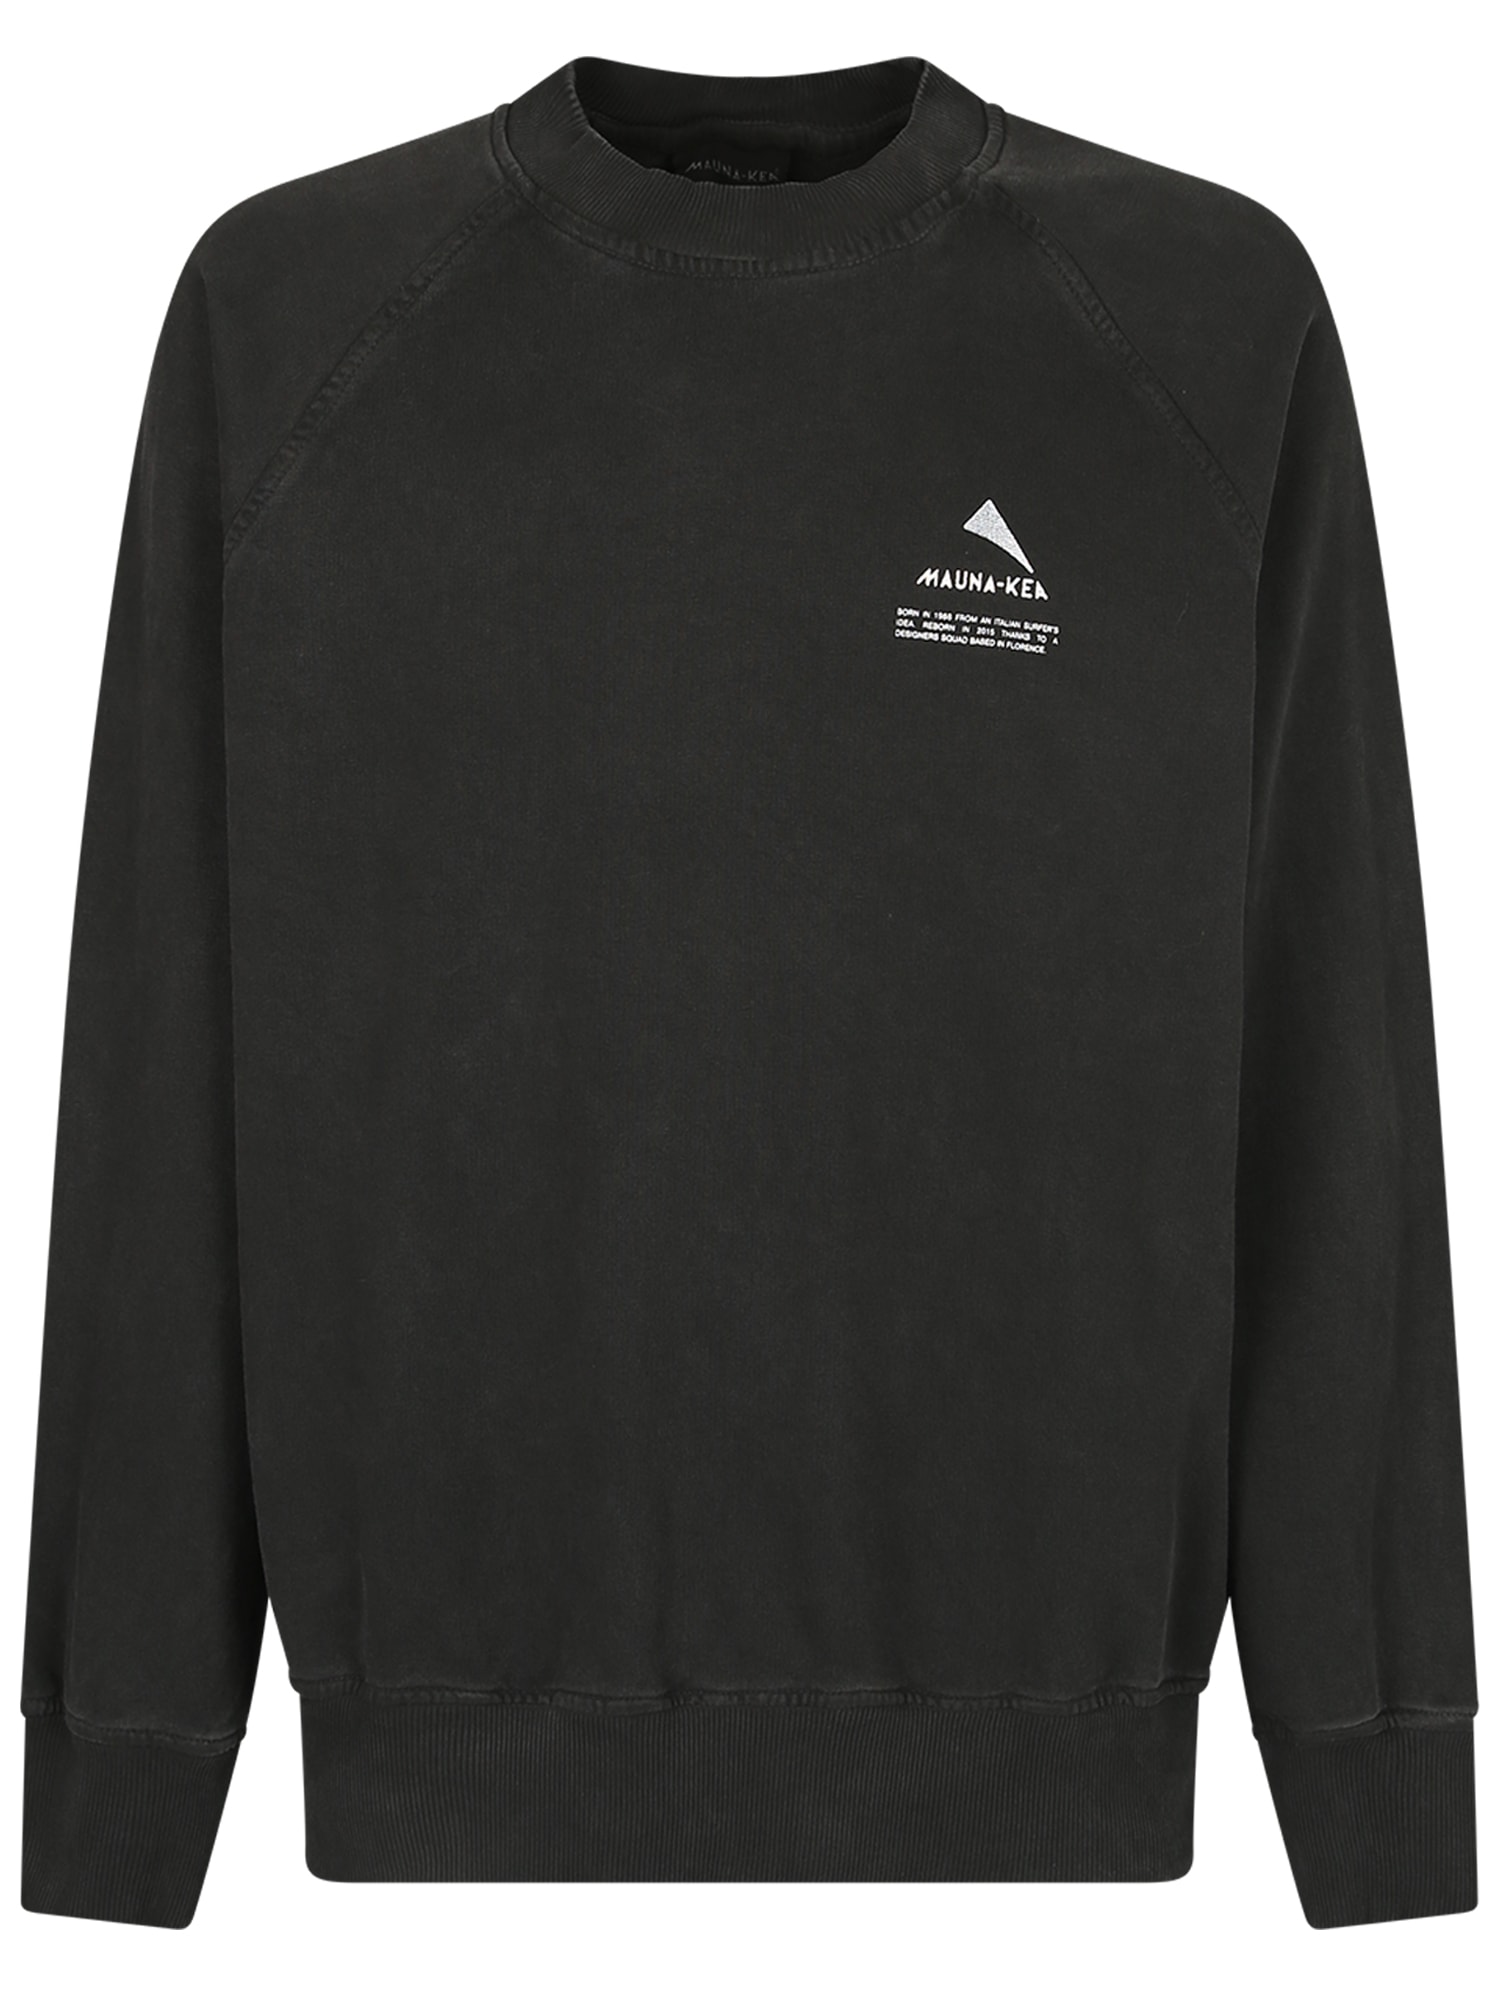 Mauna Kea Branded Sweatshirt